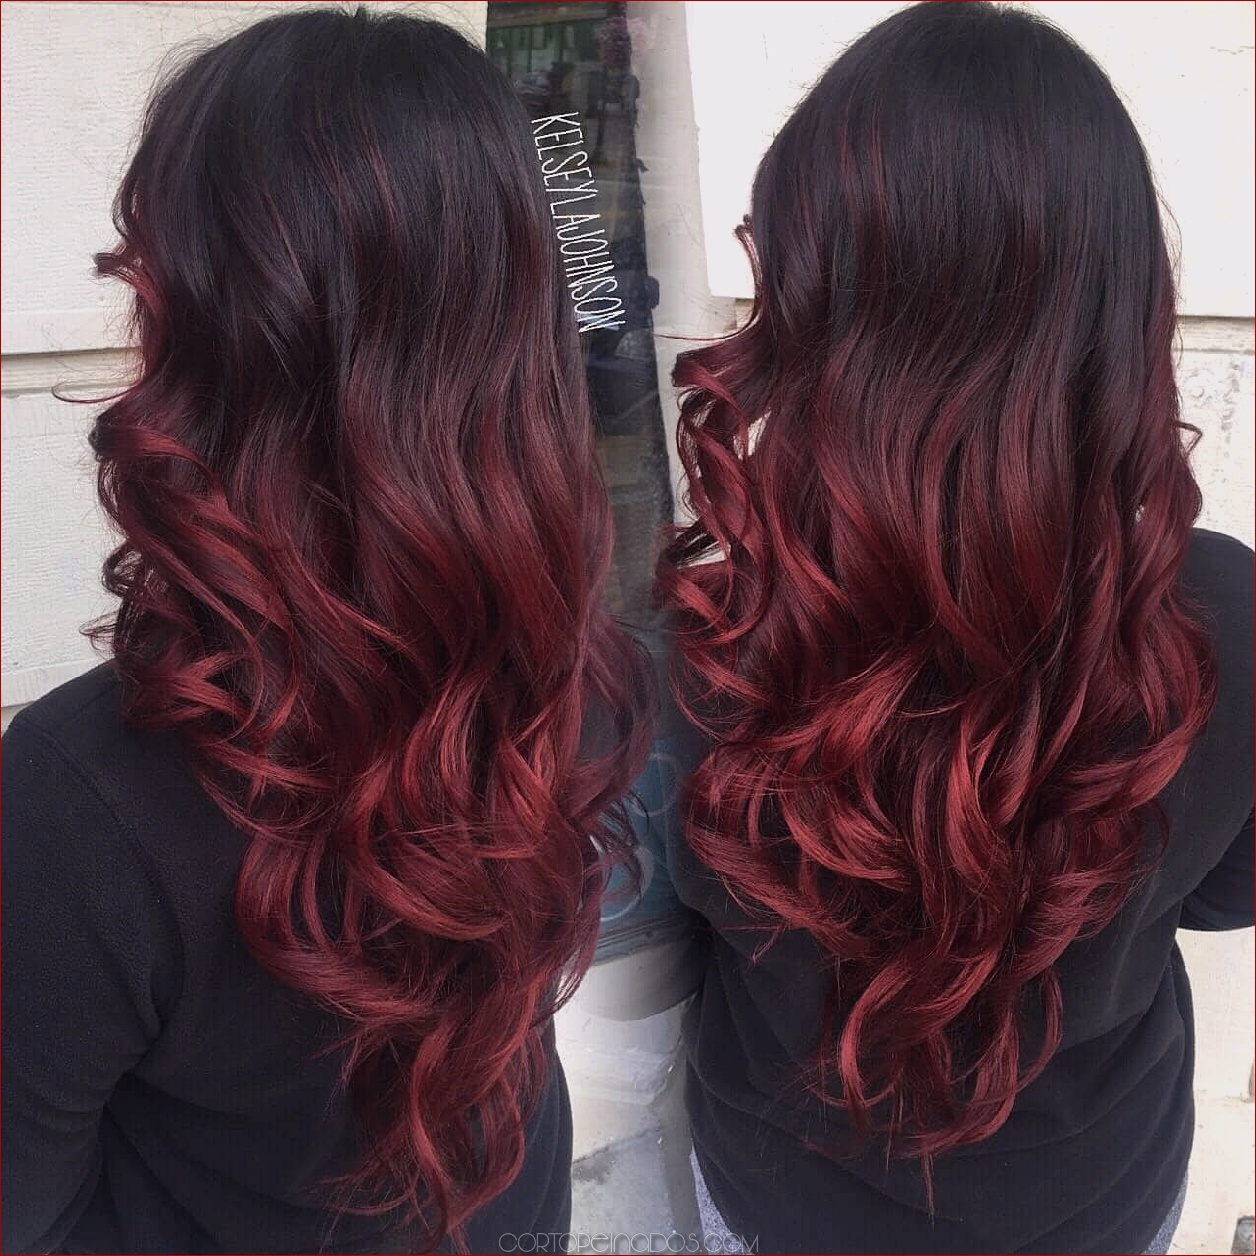 Los 27 peinados rojos más calientes de Ombre